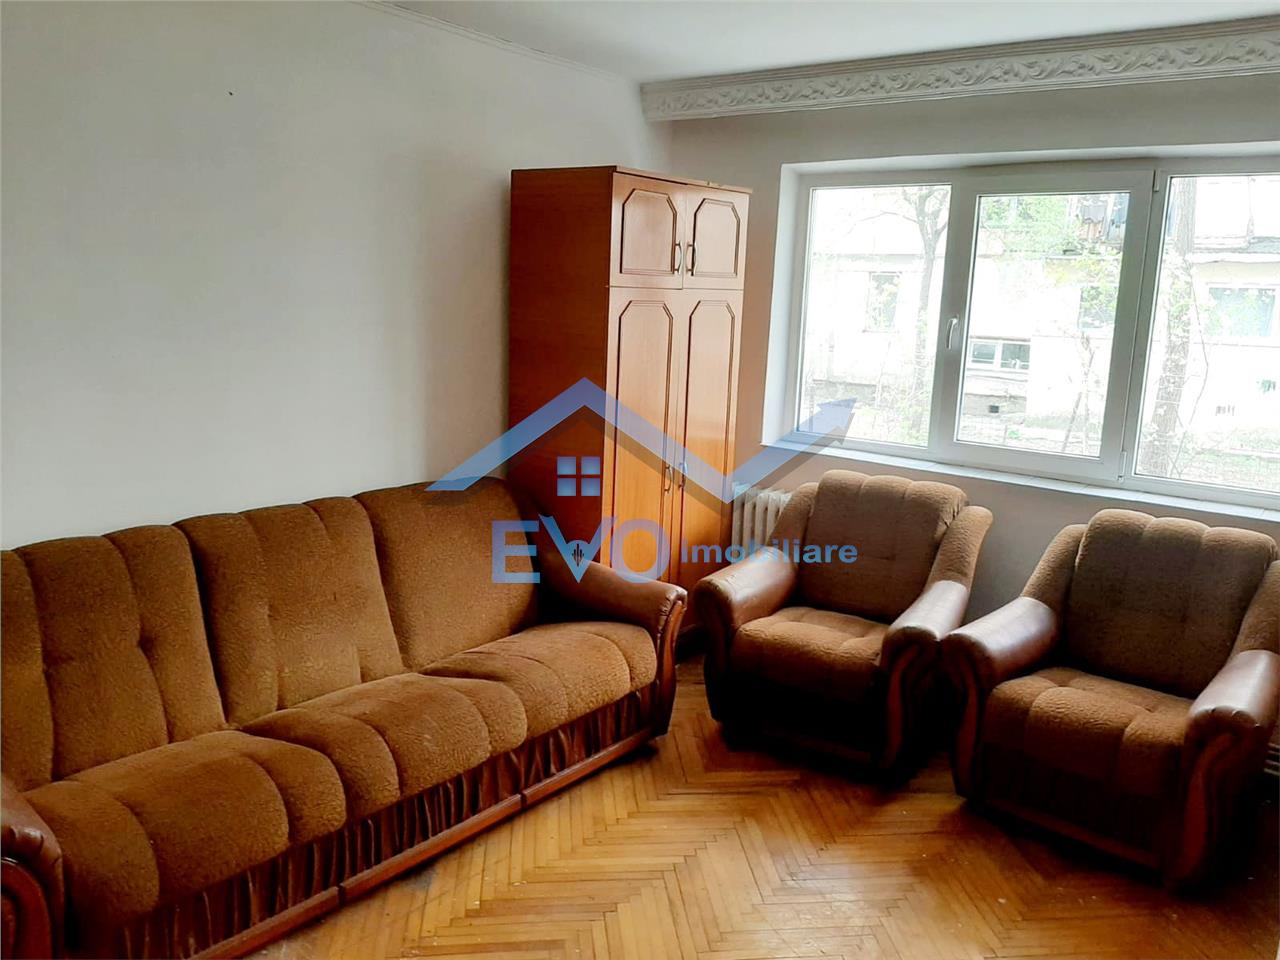 Vanzare apartament 2 camere, zona Dacia, cu acces in gradina